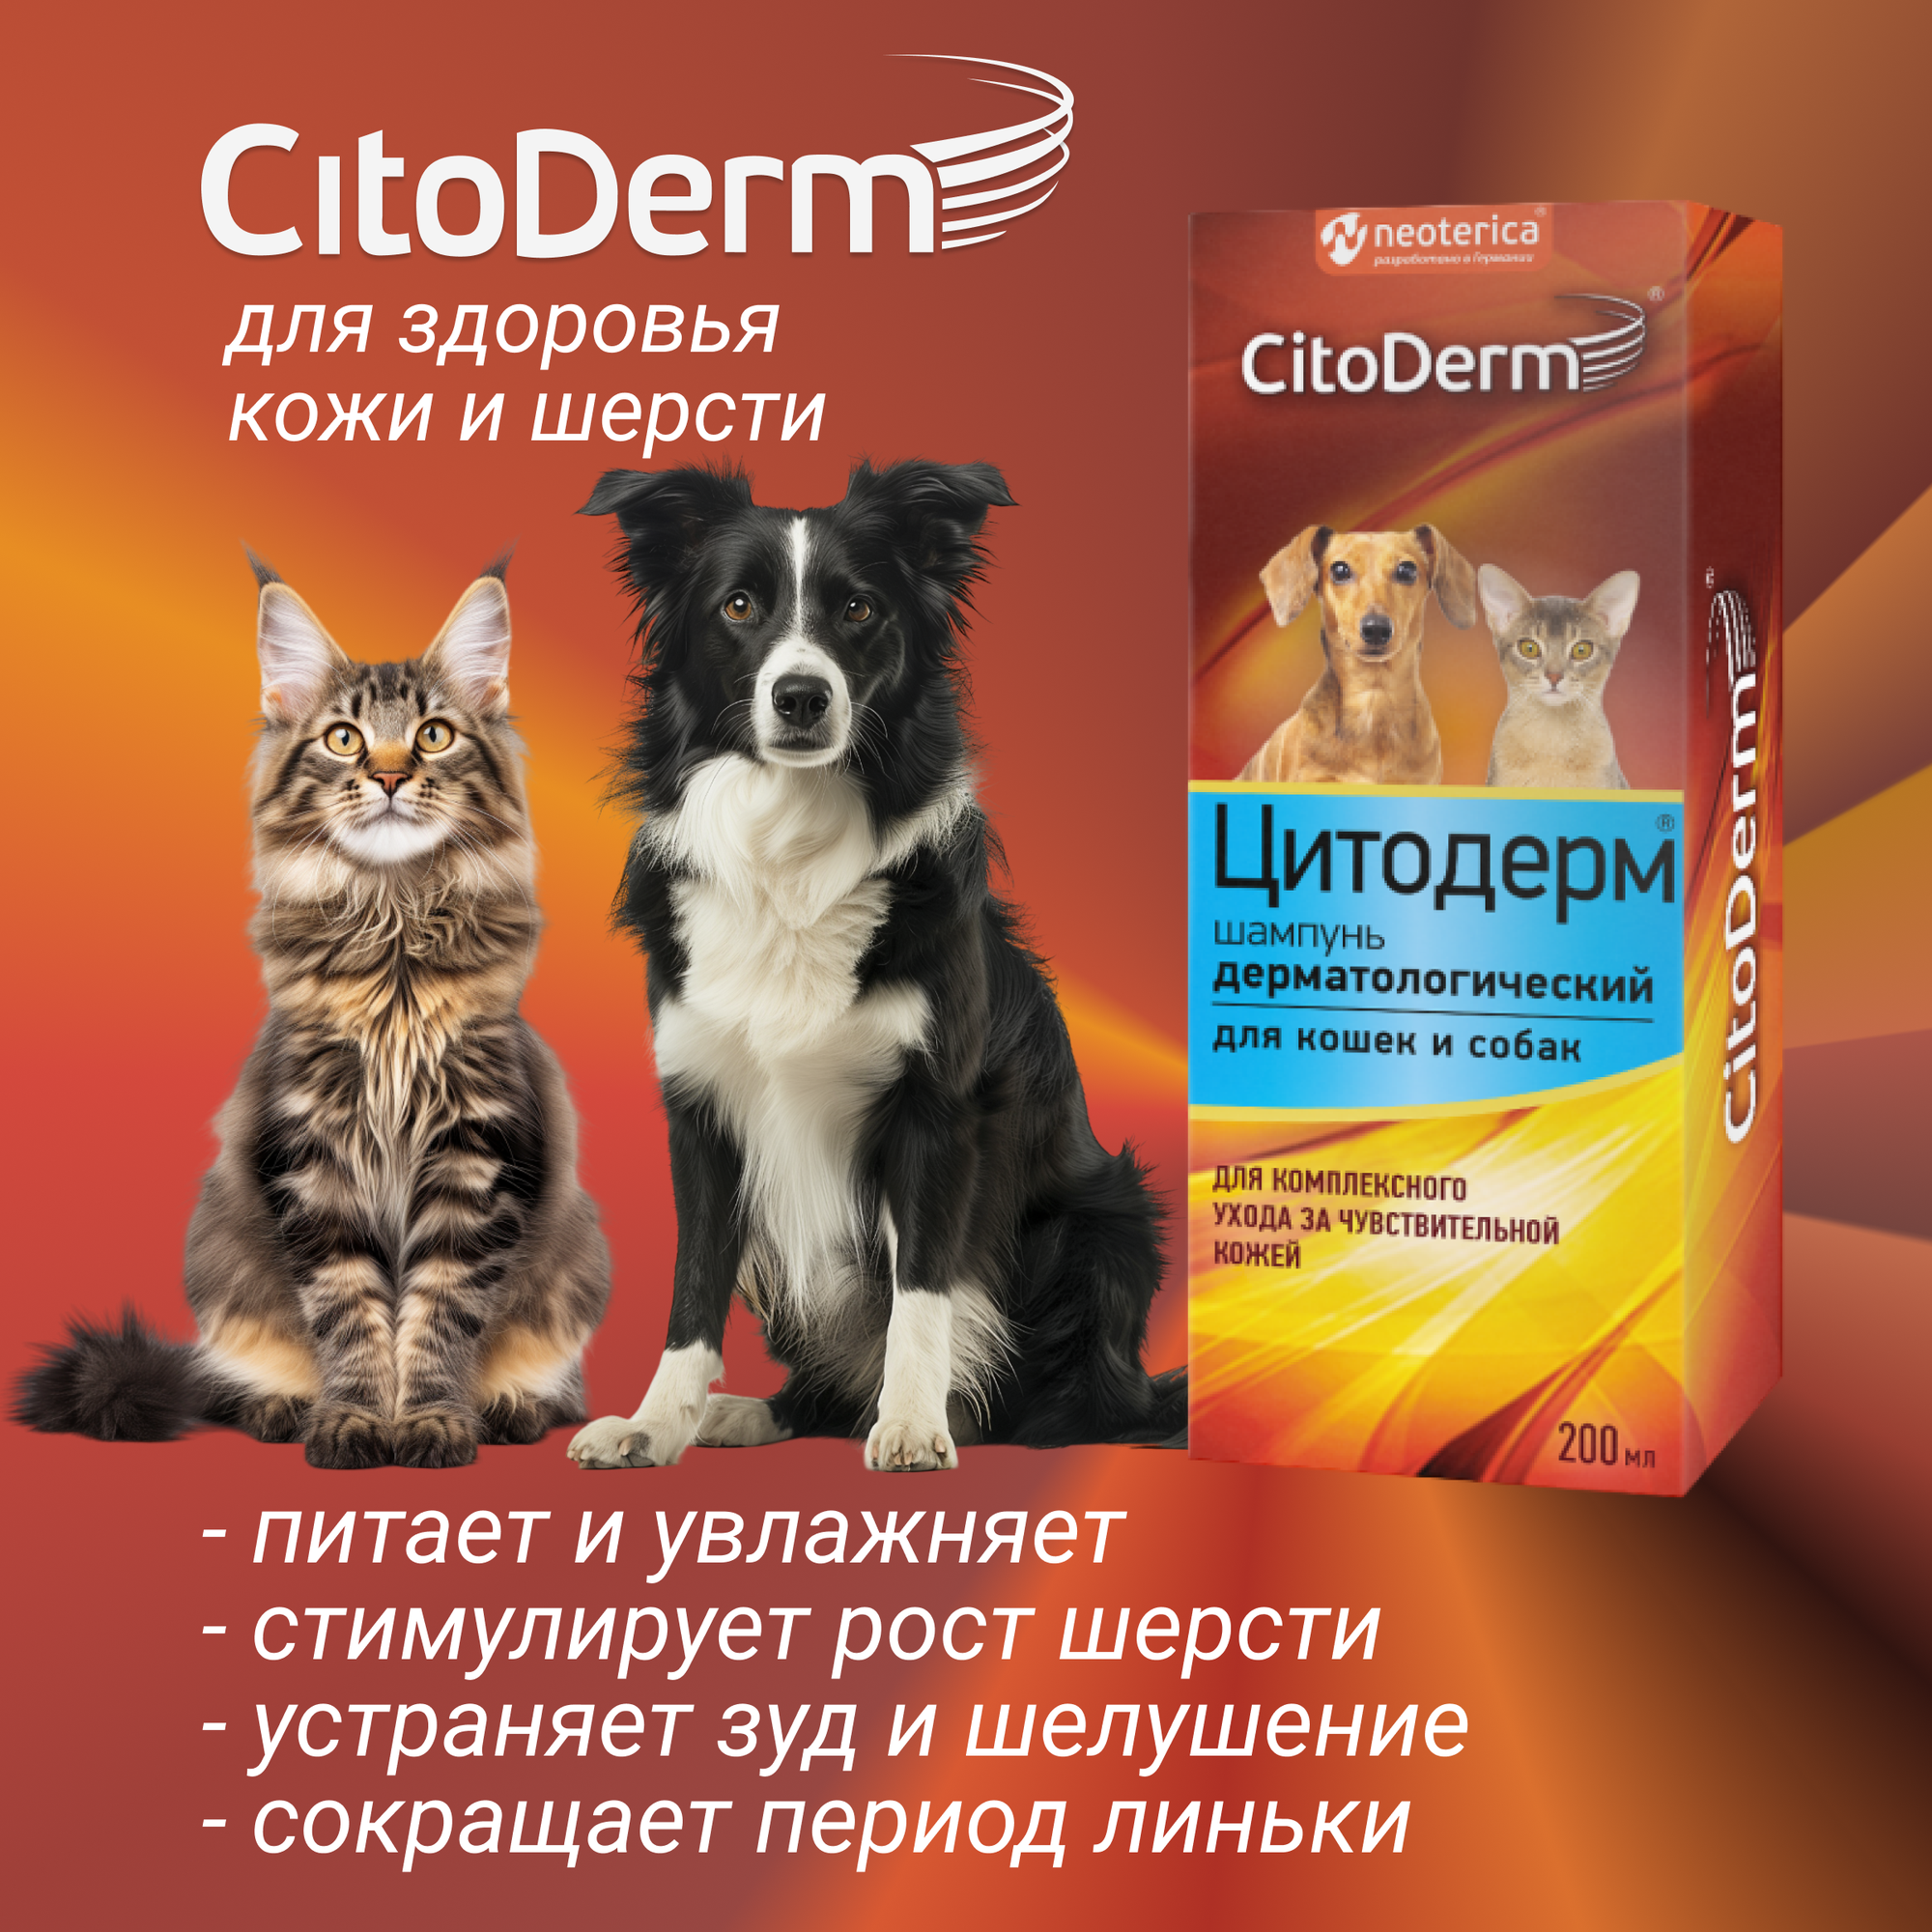 Шампунь CitoDerm дерматологический, для кошек и собак, 200 мл